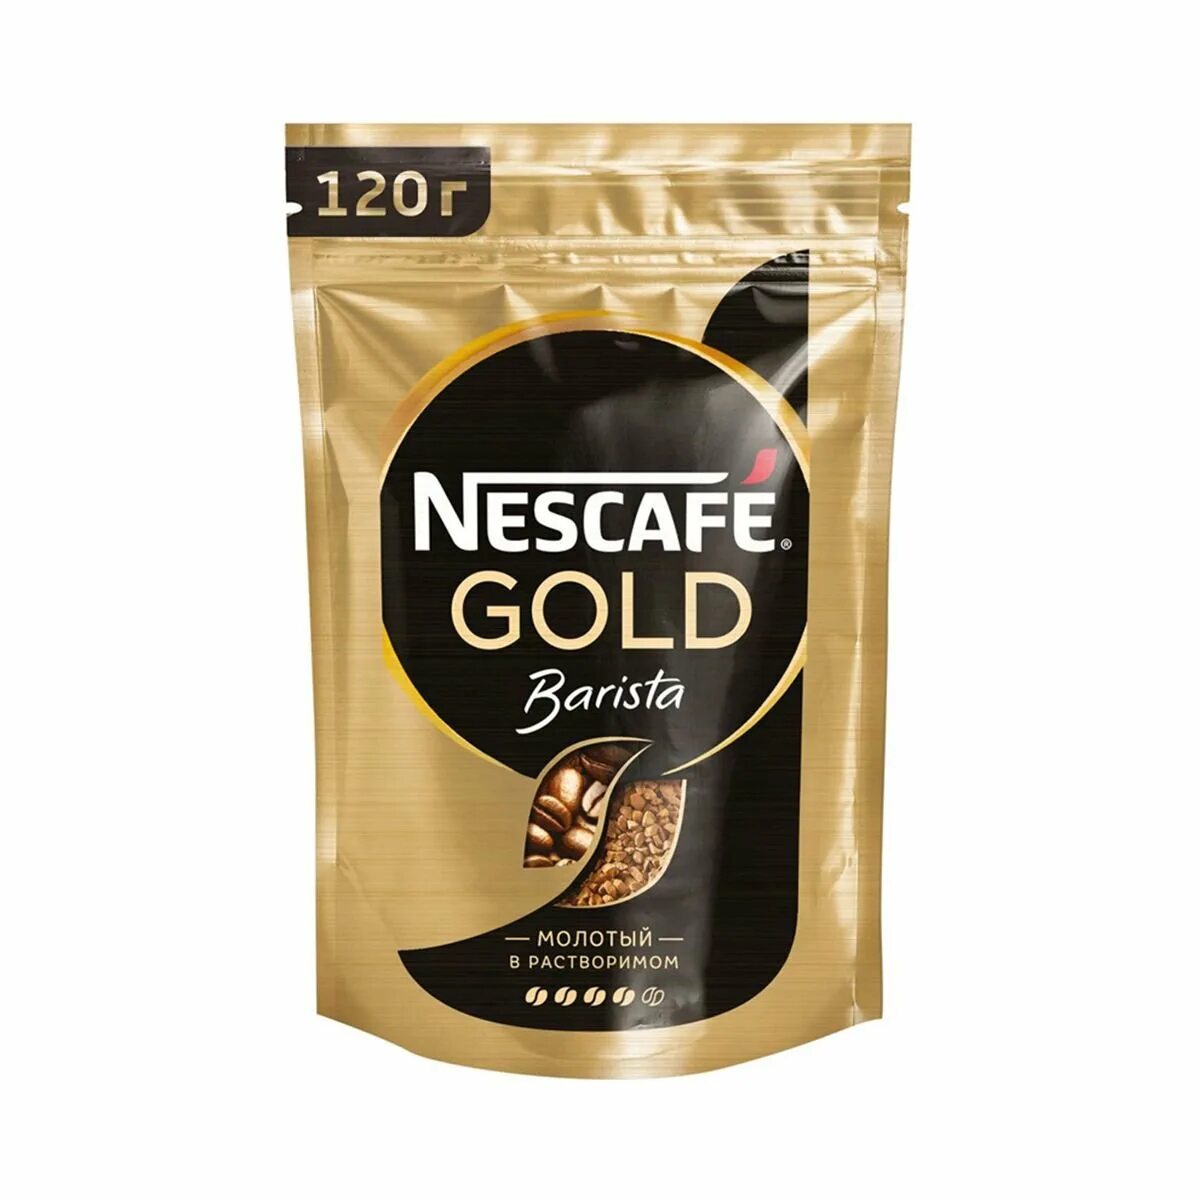 Кофе Нескафе Голд бариста 75г м/у. Кофе Nescafe Gold сублимированный 75г пакет. Кофе растворимый Nescafe Gold пакет, 75г. Кофе Nescafe Gold Barista растворимый сублимированный 75 гр. Nescafe barista купить